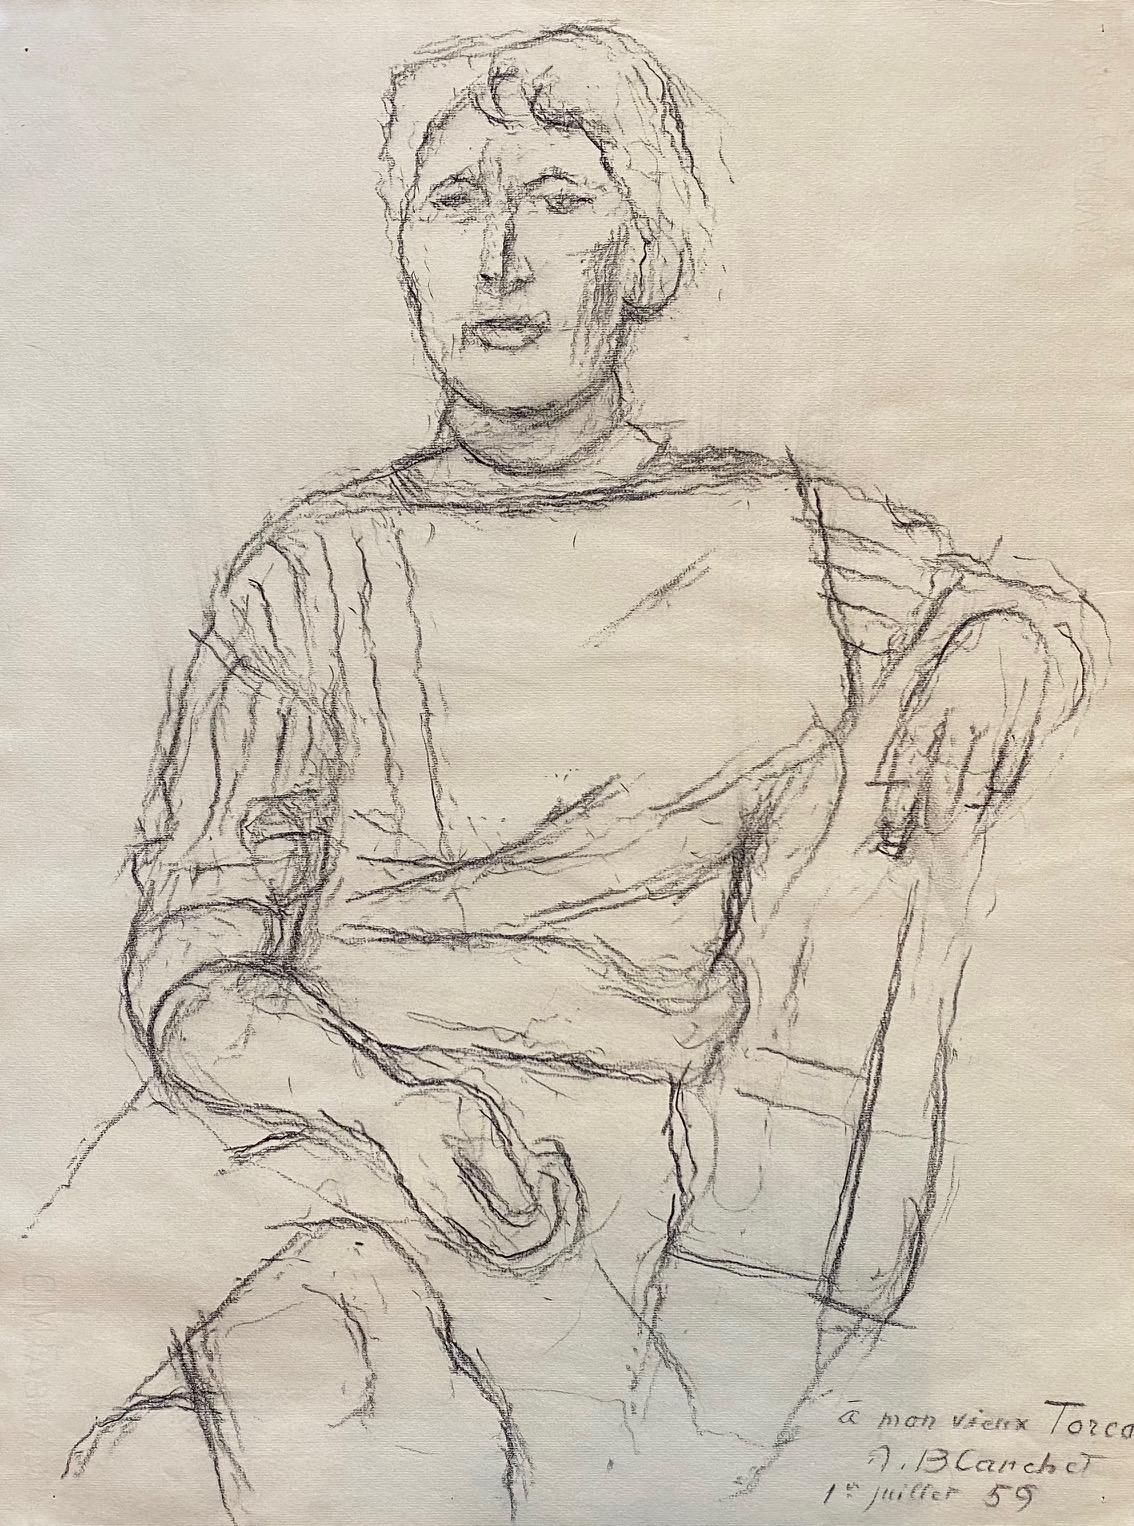 Portrait pour Torca by Alexandre Blanchet - Charcoal on paper 44x58 cm